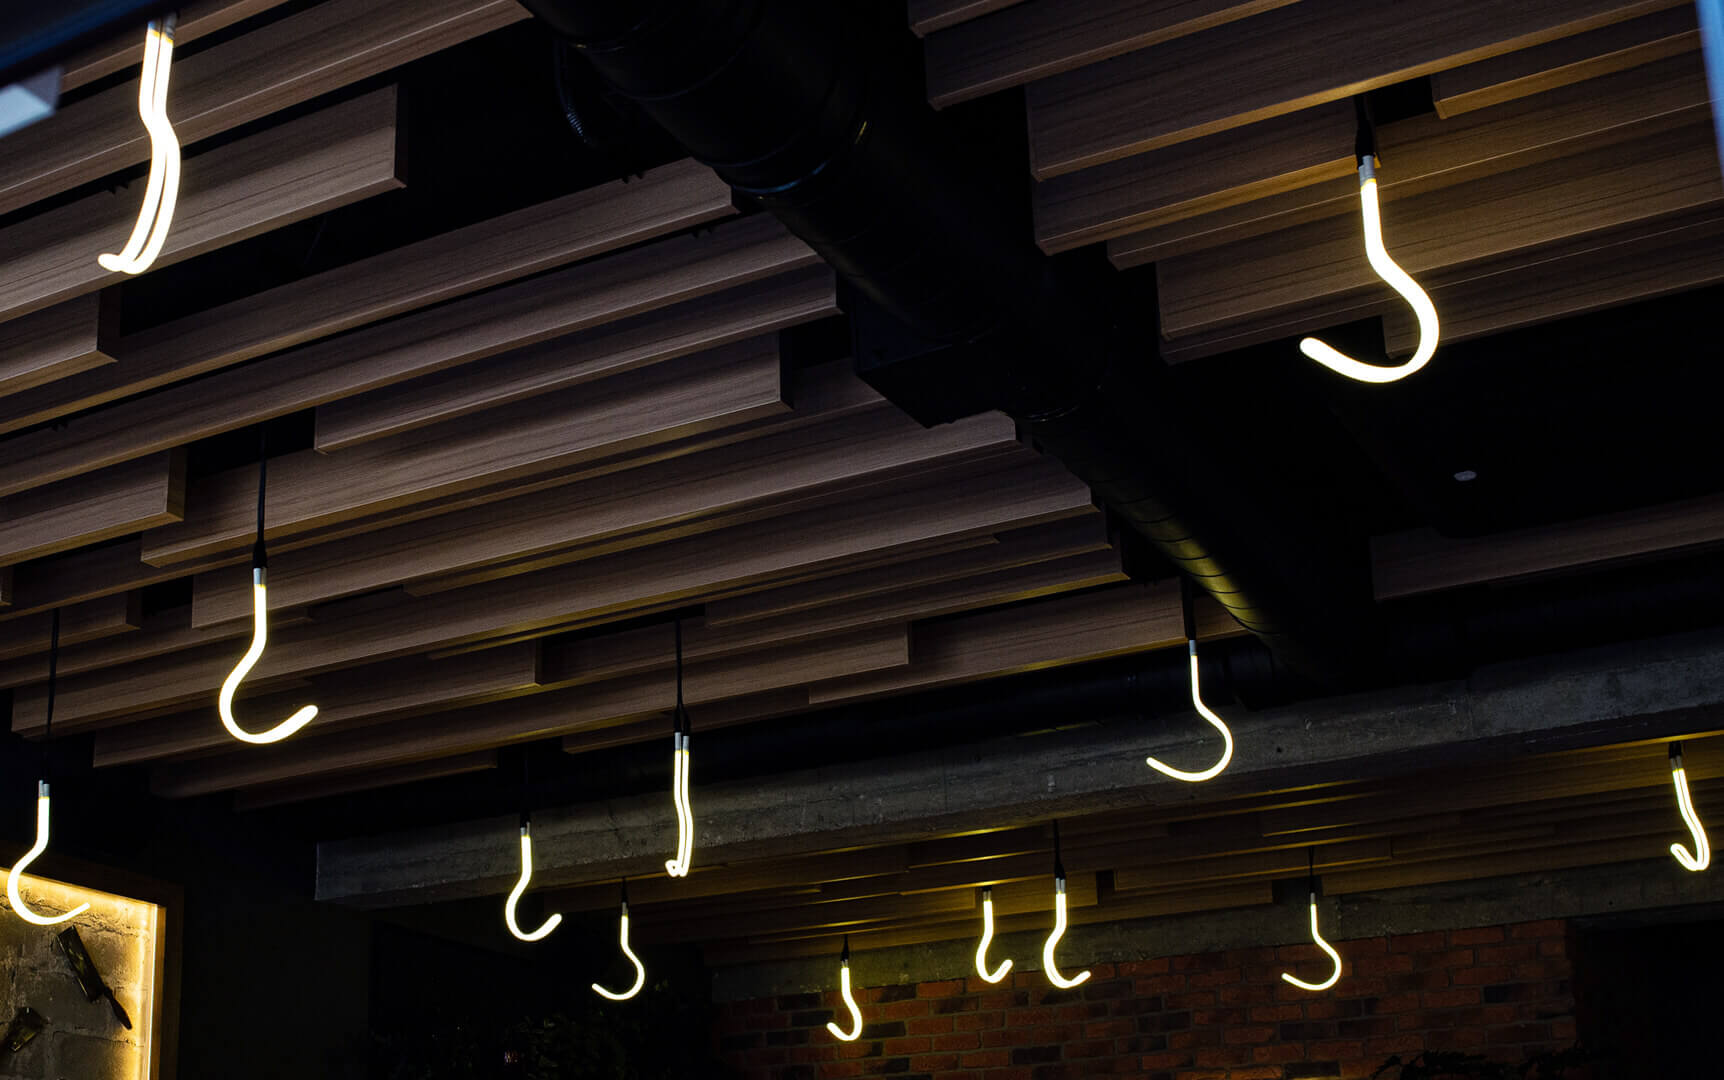 Neonhaken an der Decke des Steakhauses.